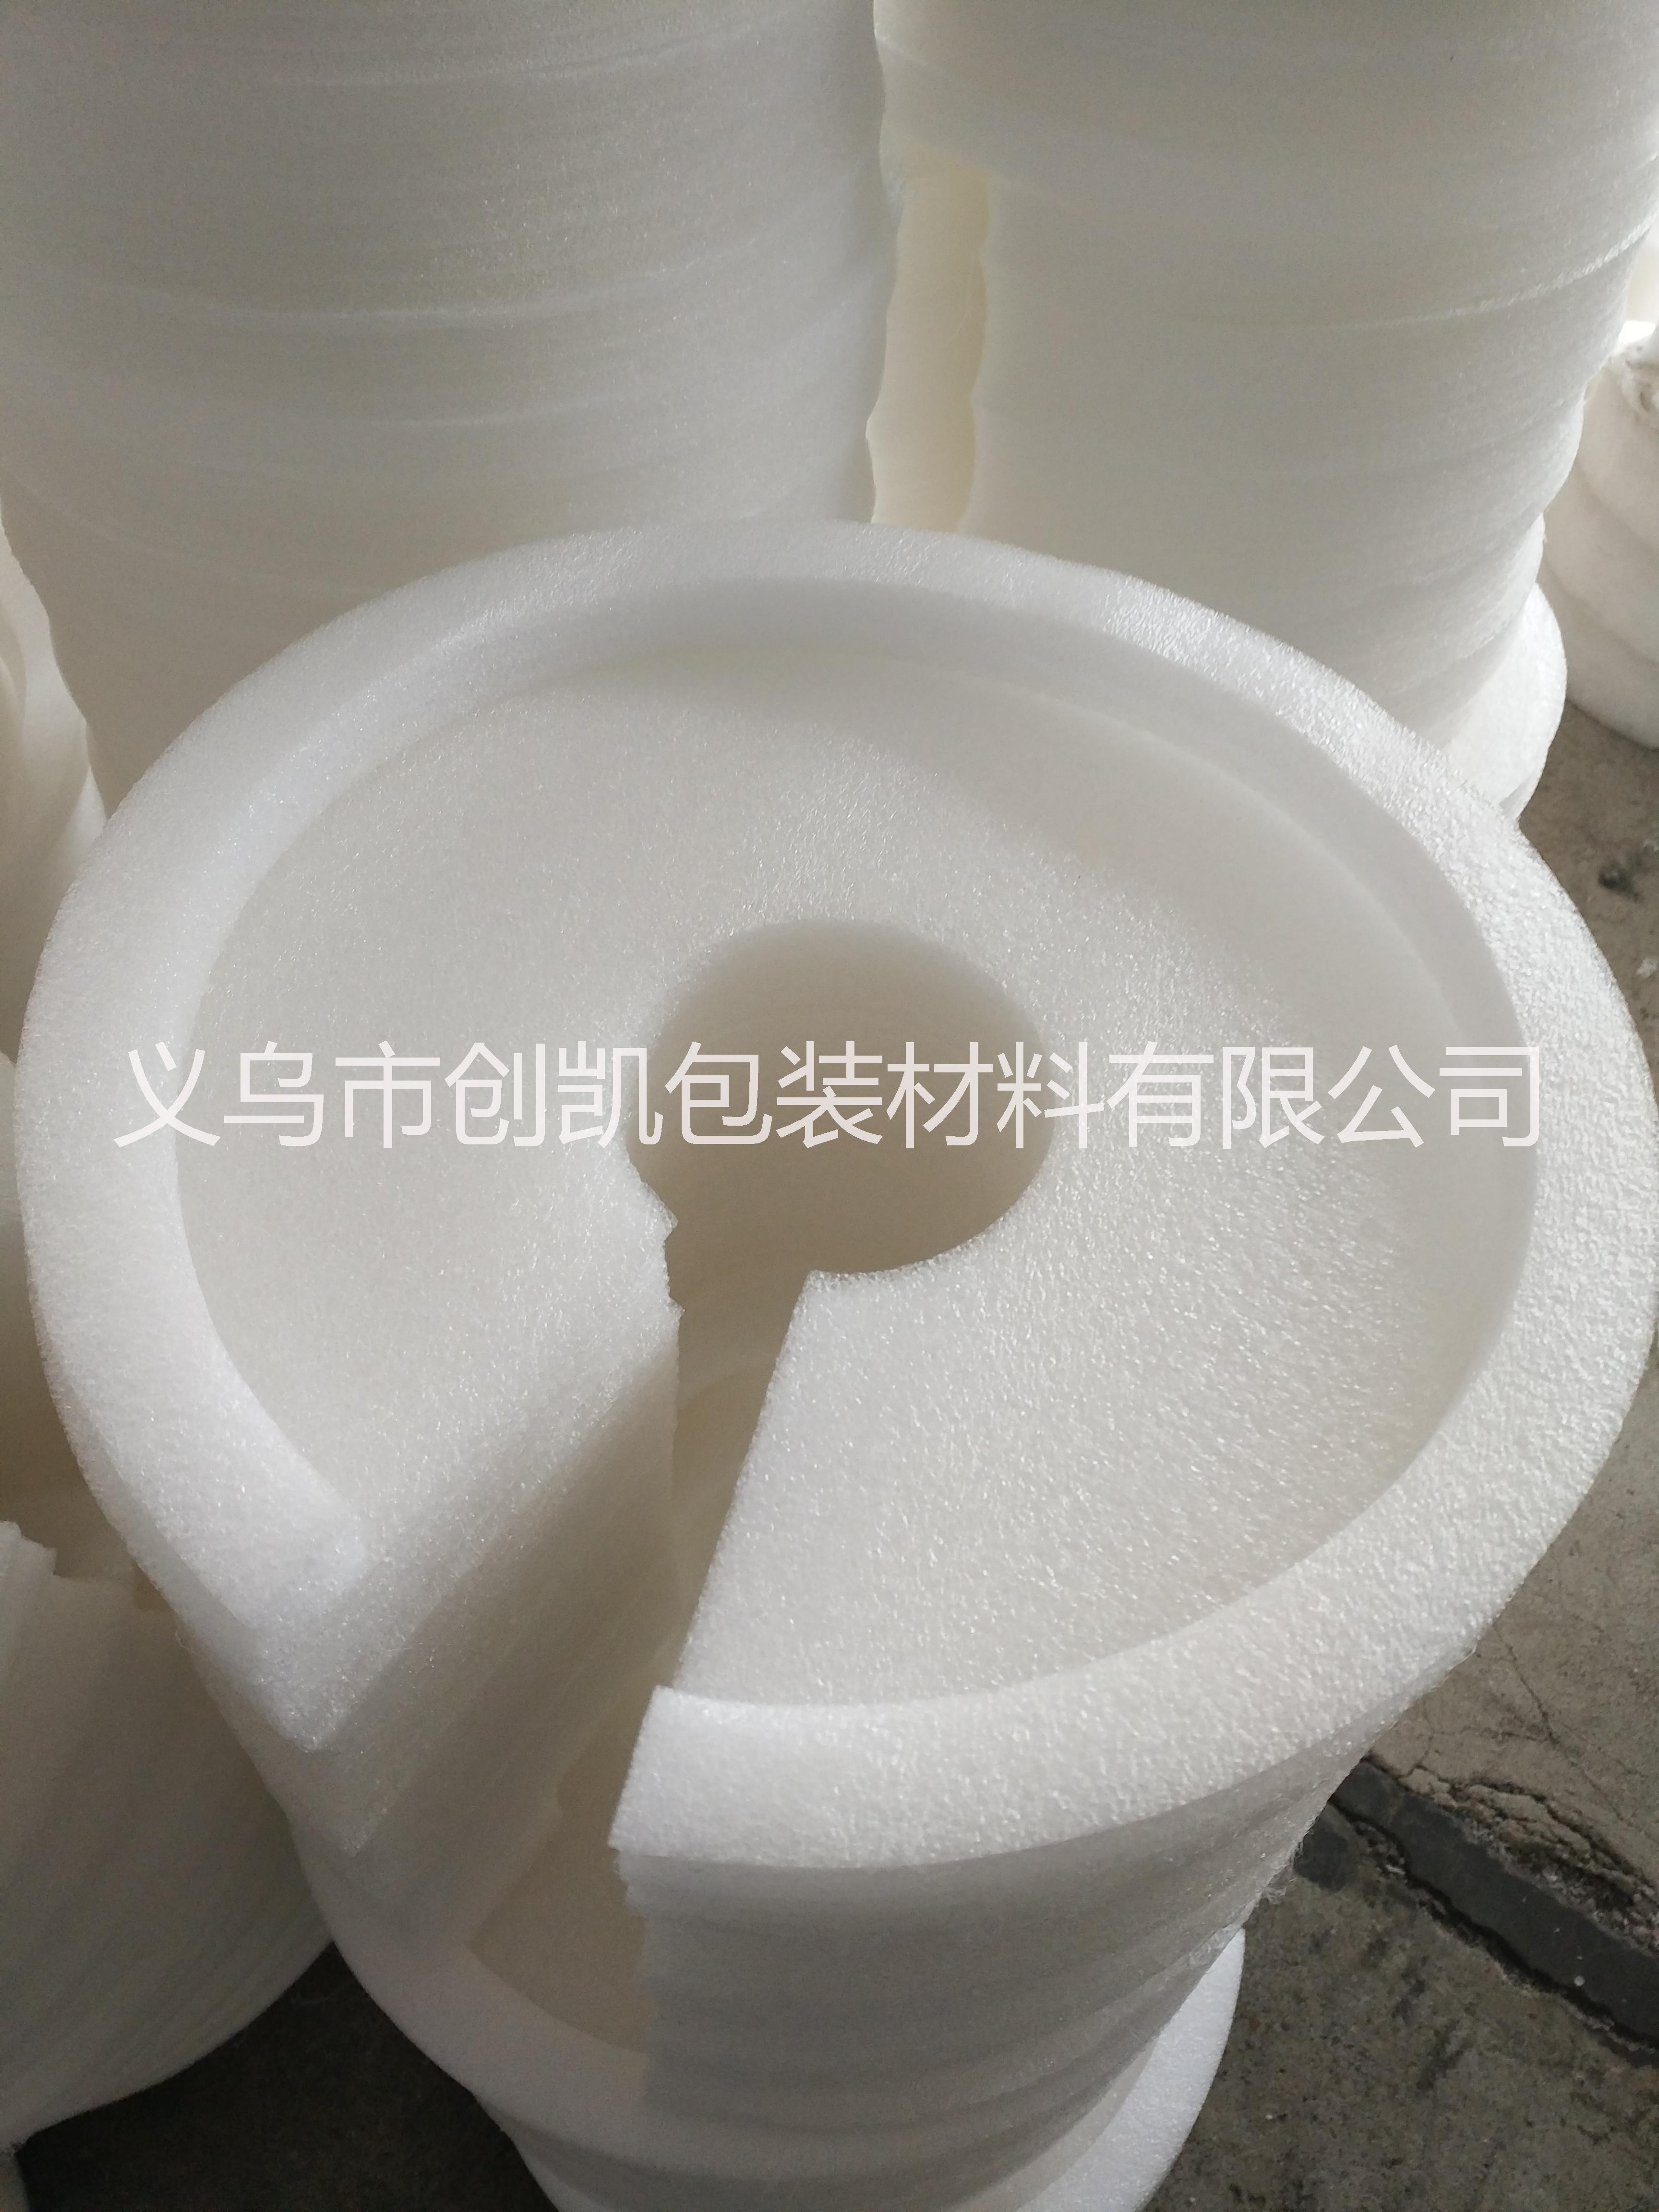 义乌珍珠棉卷材生产厂家 金华珍珠棉卷材 绍兴珍珠棉卷材图片